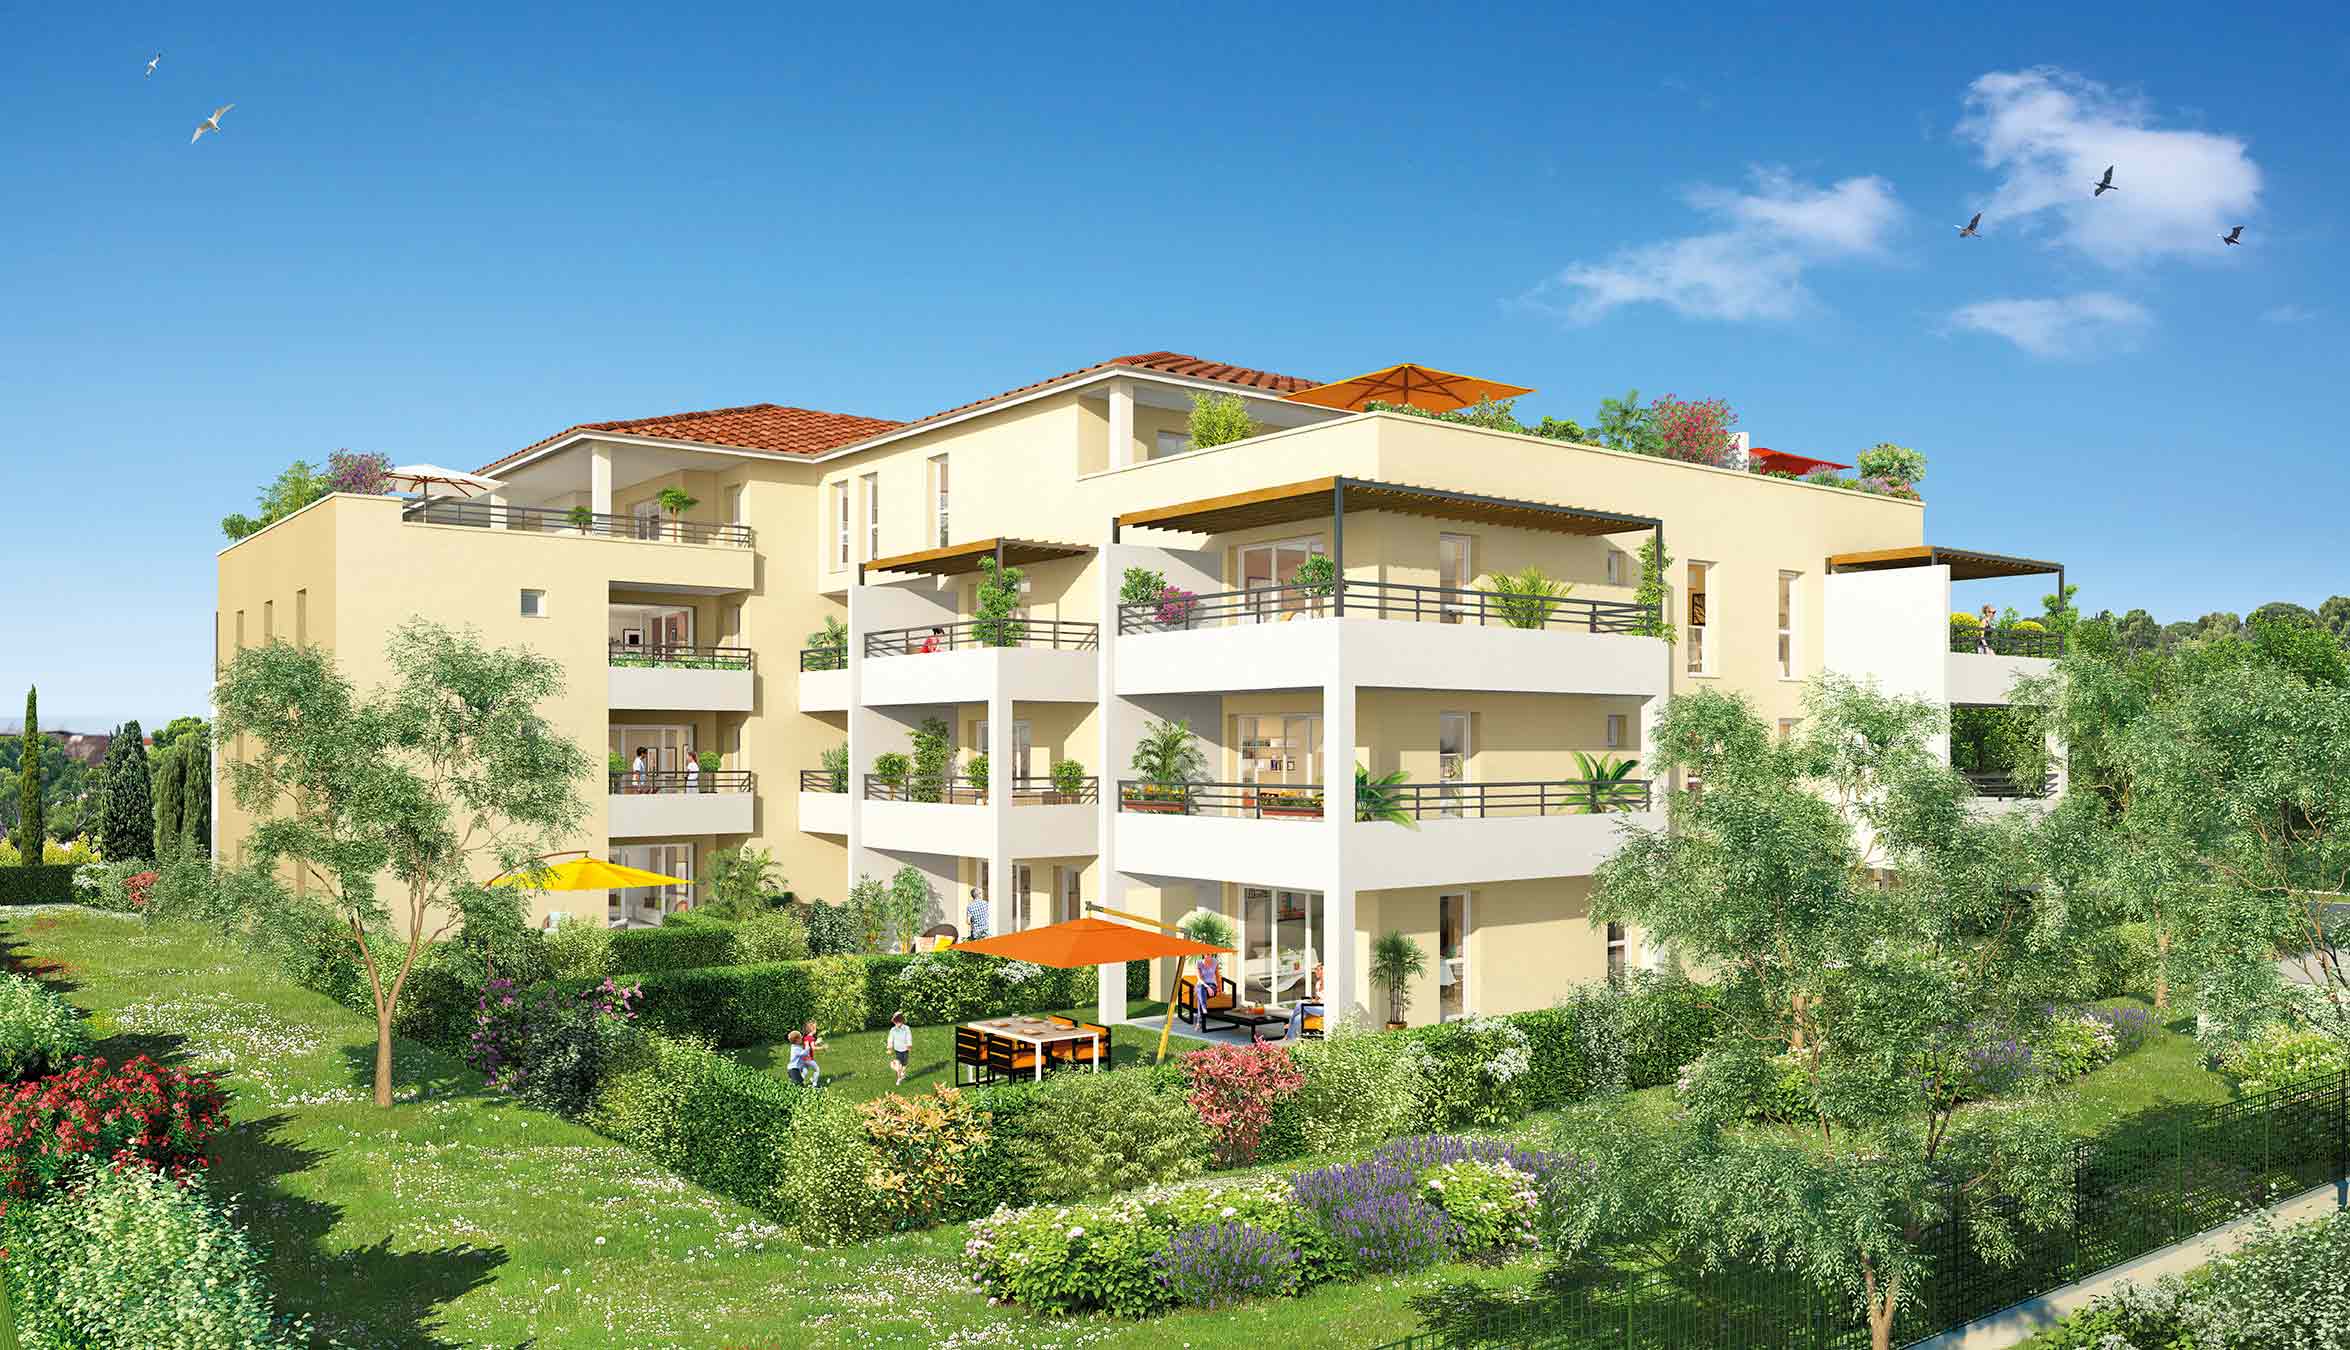 Programme immobilier neuf Sète : Investir dans un logement neuf est une garantie